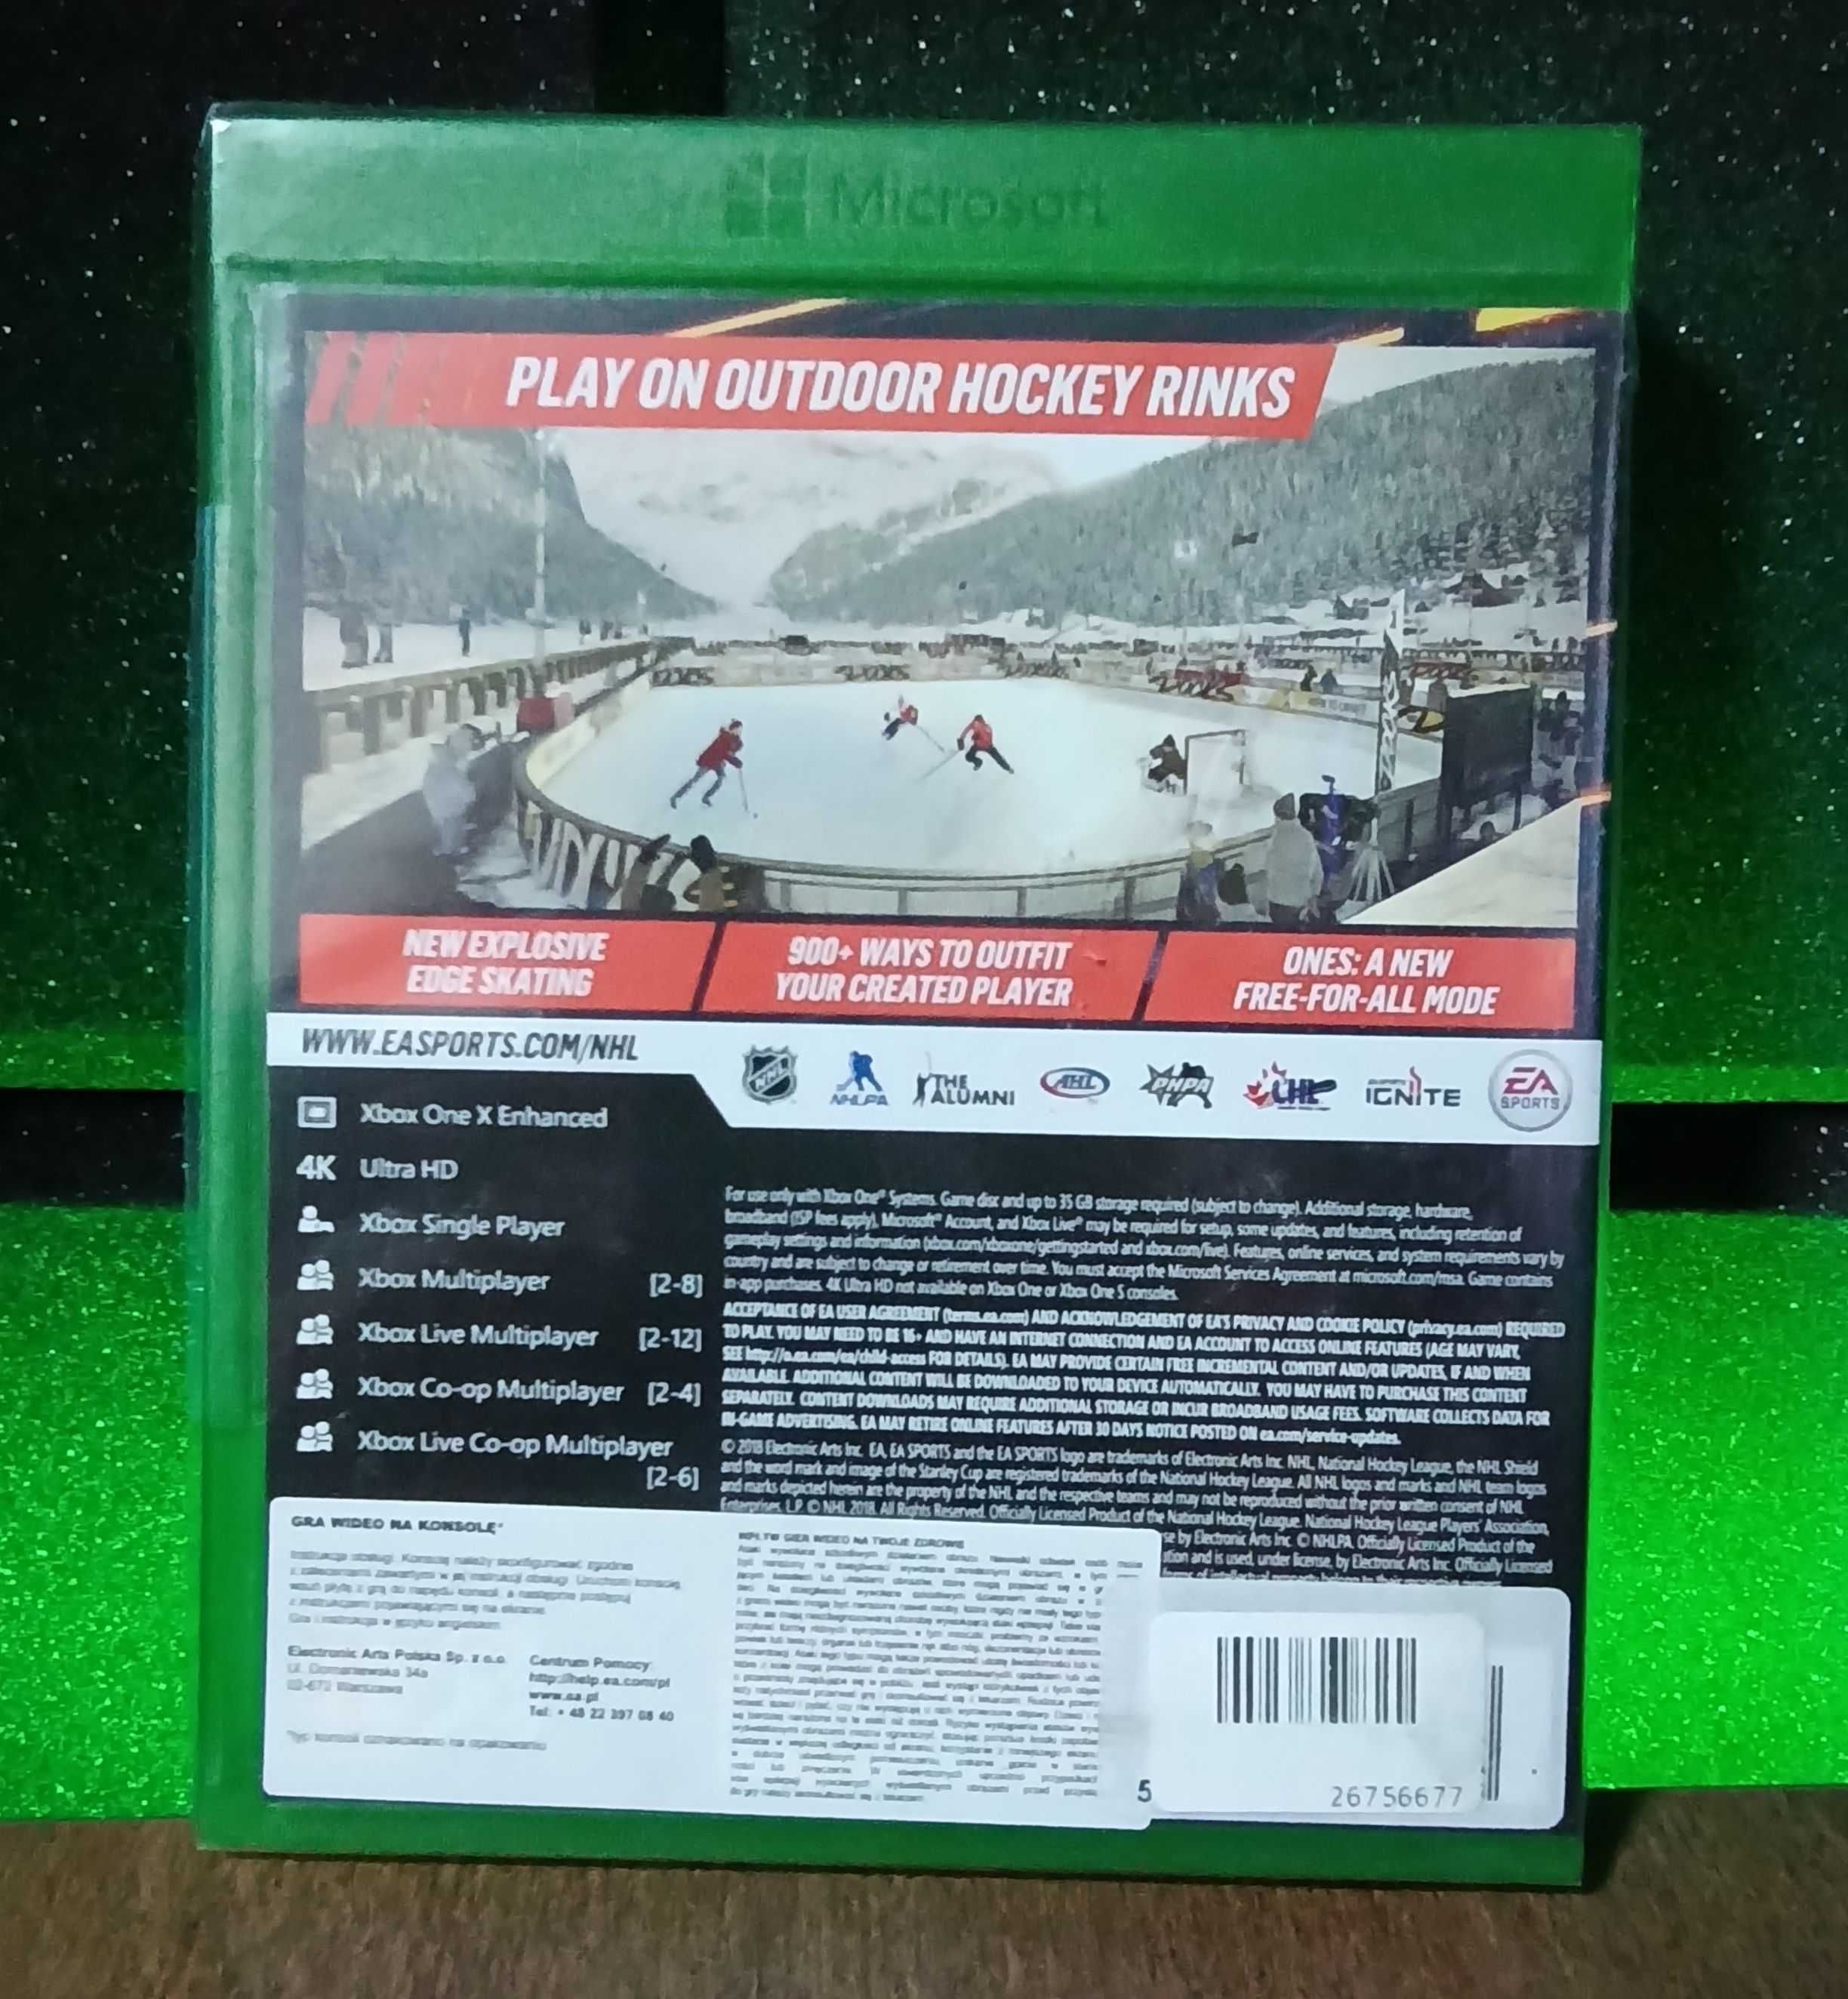 NHL 19 Xbox One S / Series X - doskonała gra sportowa, hokej na dwóch